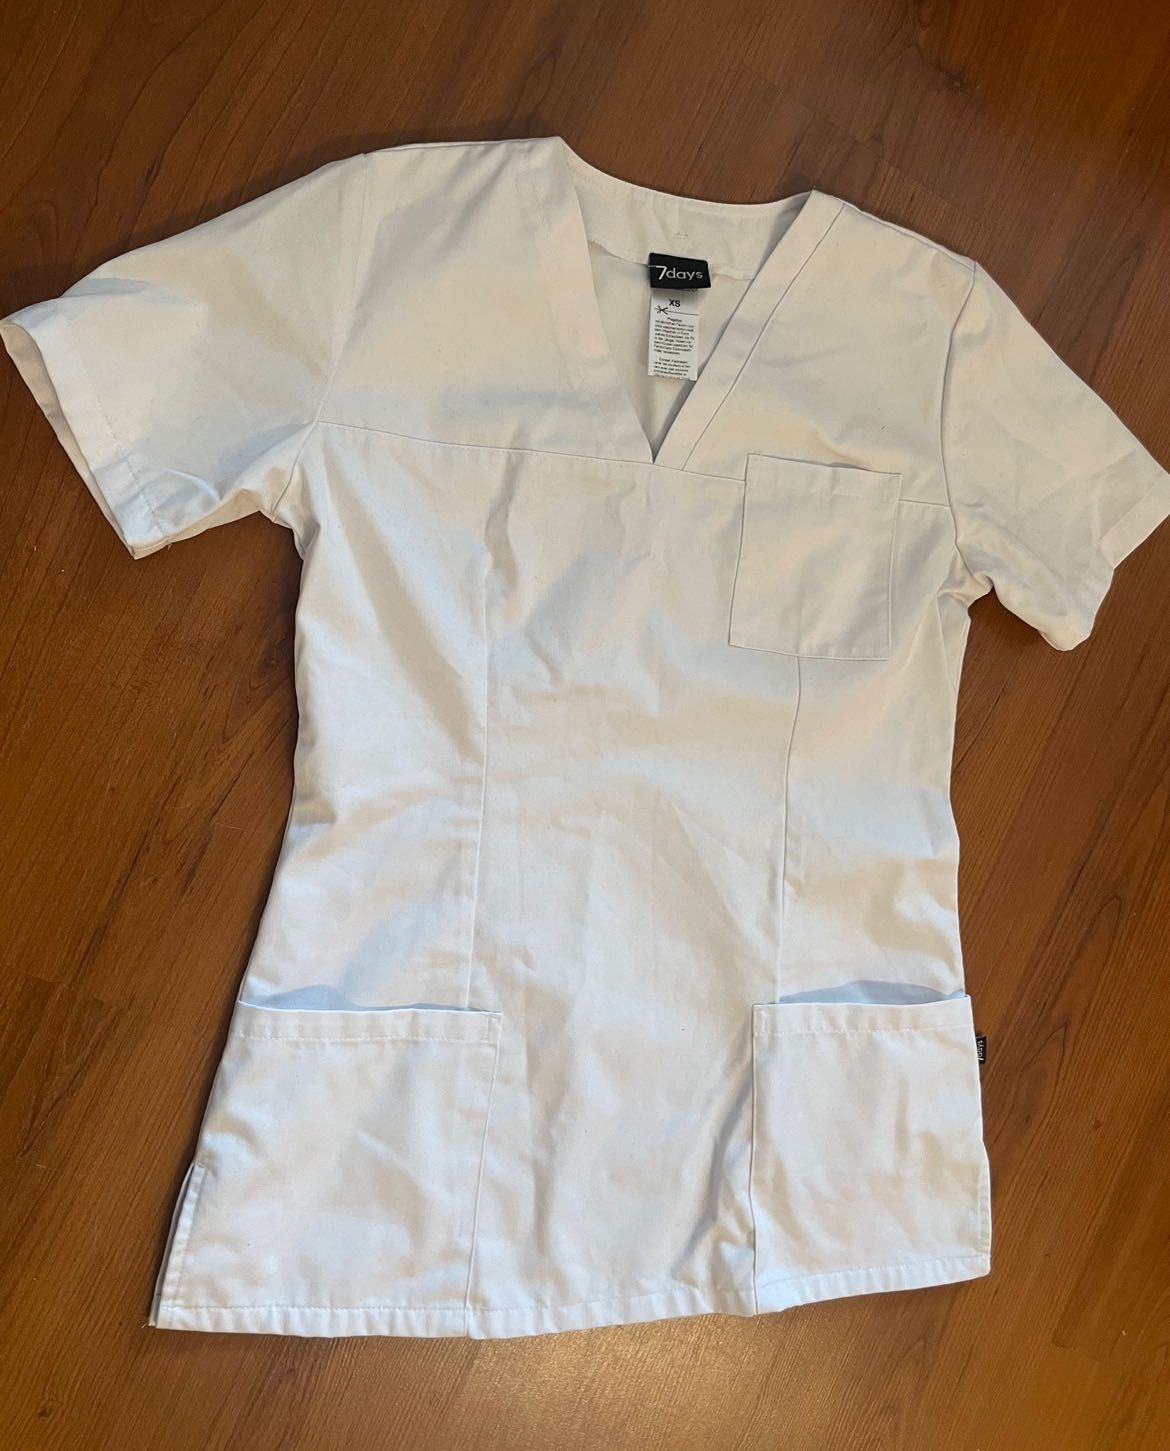 Bluzka koszula medyczna scrubs 7 days